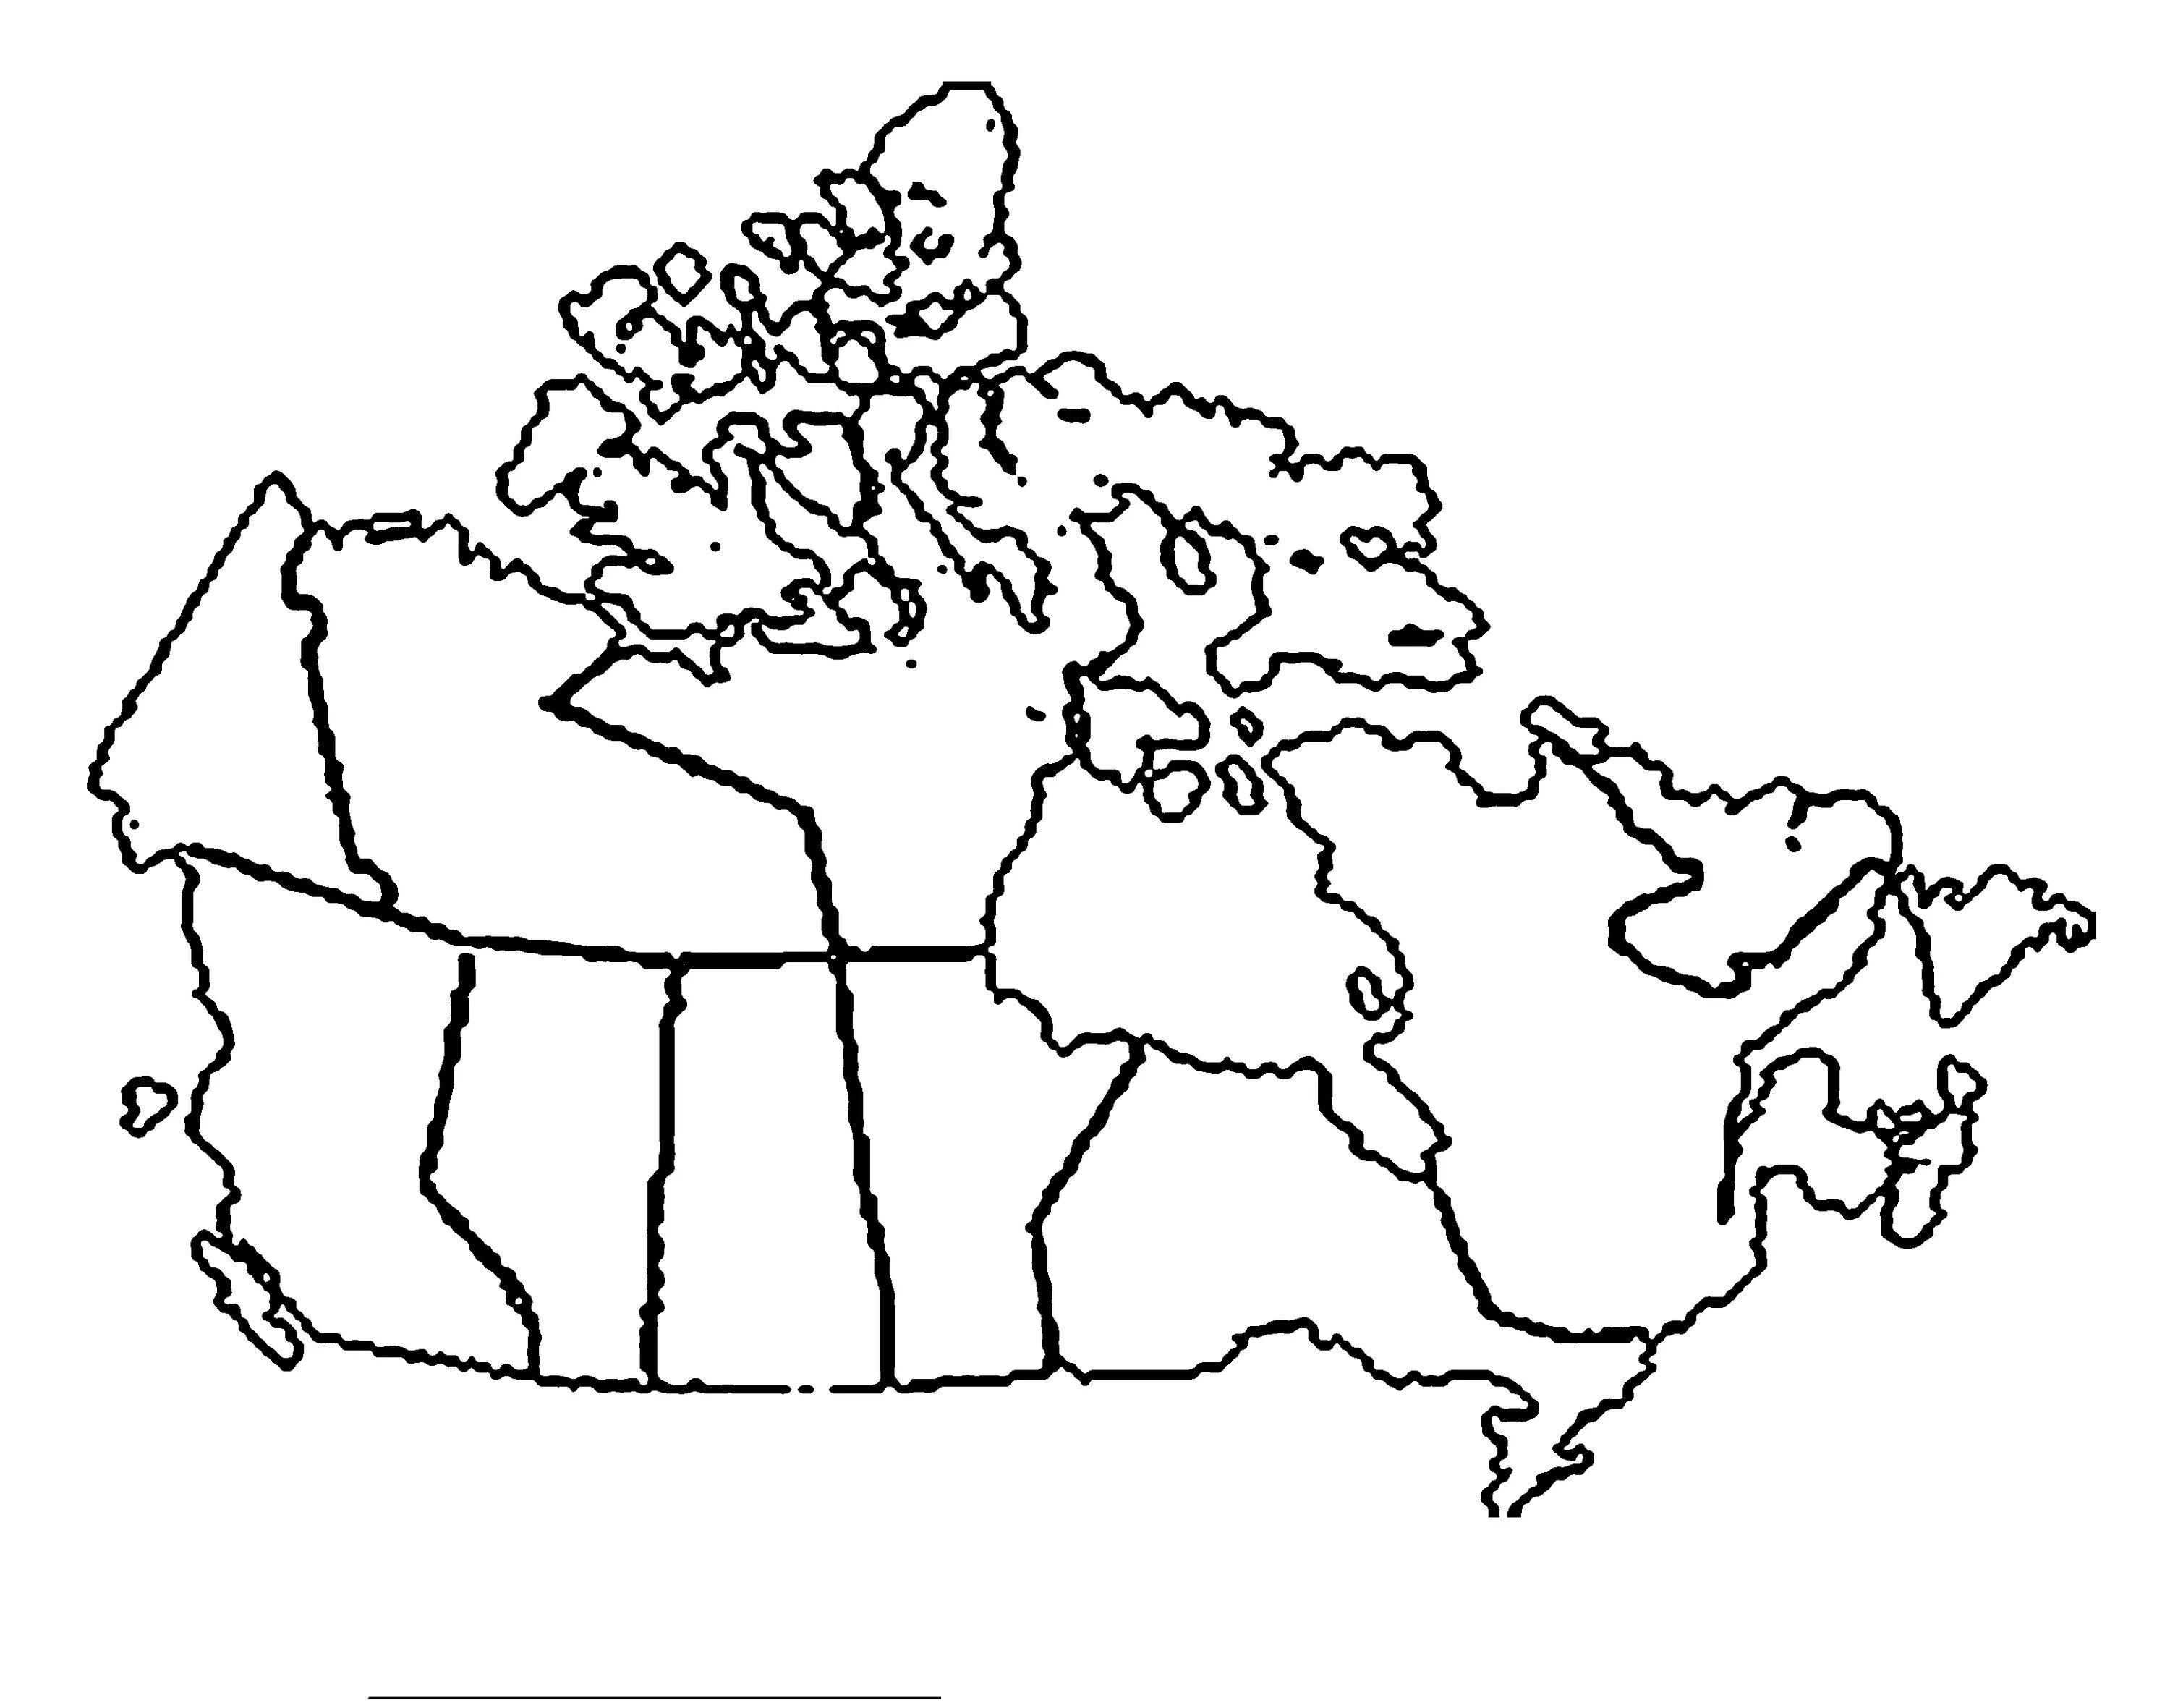 Разукрасить контурную карту. Контурная карта Канады для печати. Карта для разукрашивания. Карта Канады для детей. Карта кана3а раскраска.